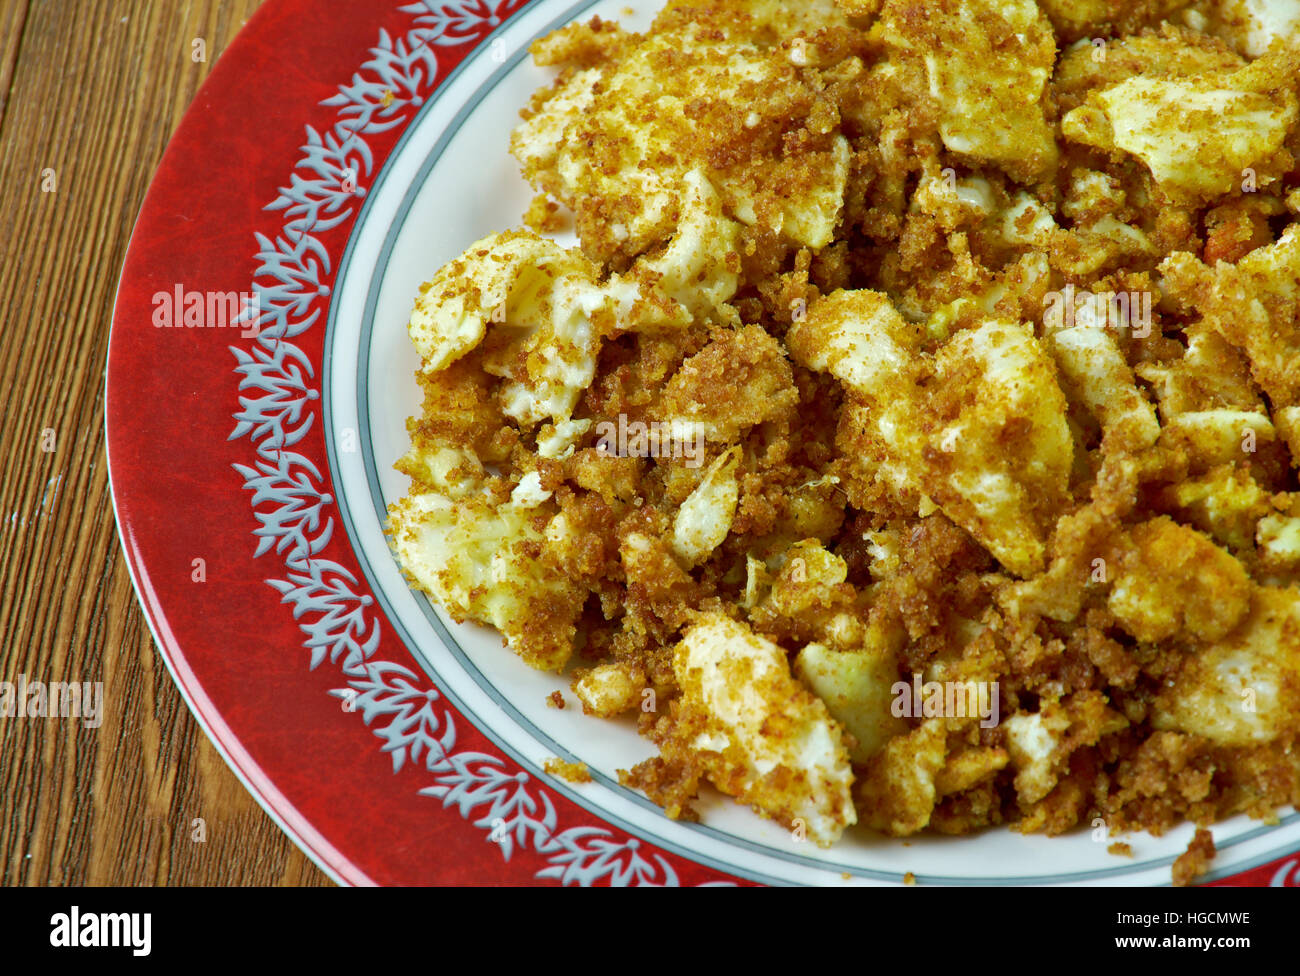 Farofa de ovos egg with flour or cassava.Latin Kitchen Stock Photo - Alamy